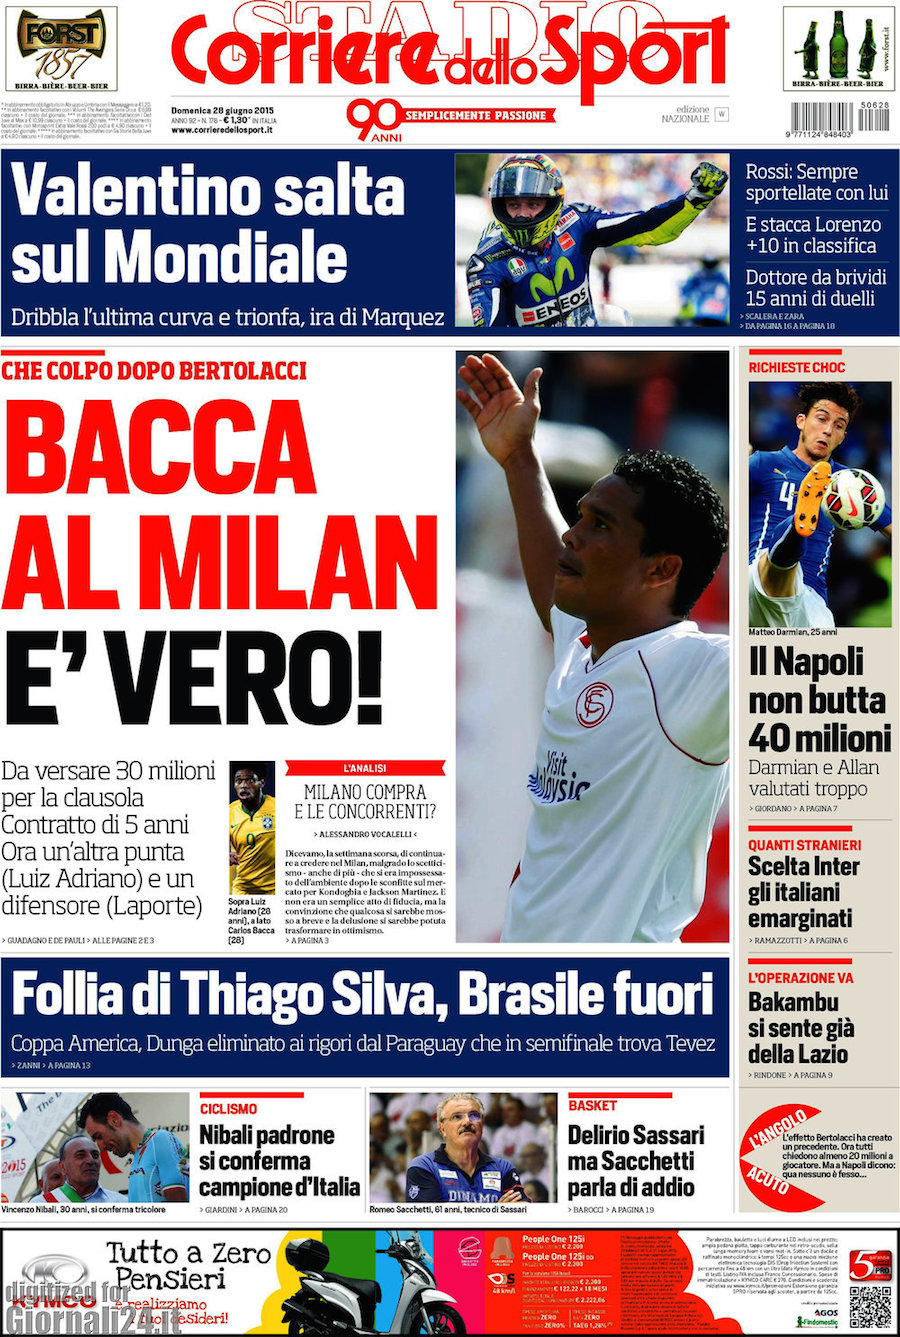 Rassegna stampa 28 giugno 2015: prime pagine Gazzetta, Corriere e Tuttosport